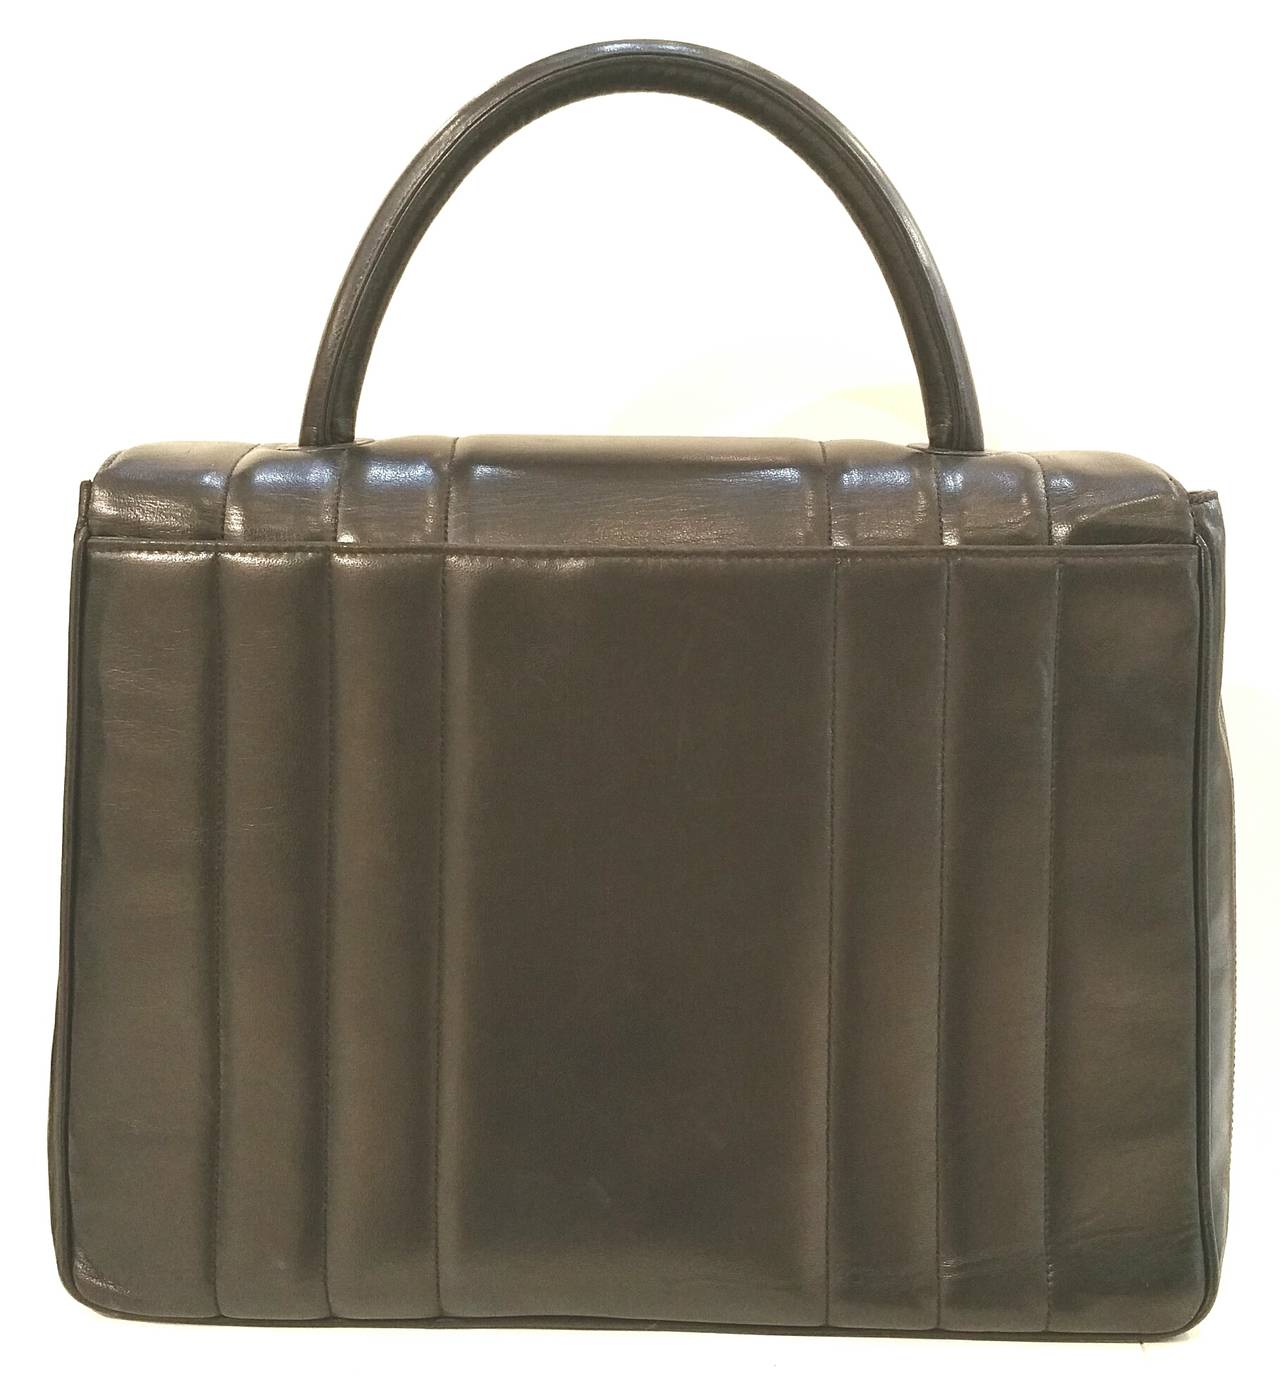 1994s Chanel black leather satchel bag.